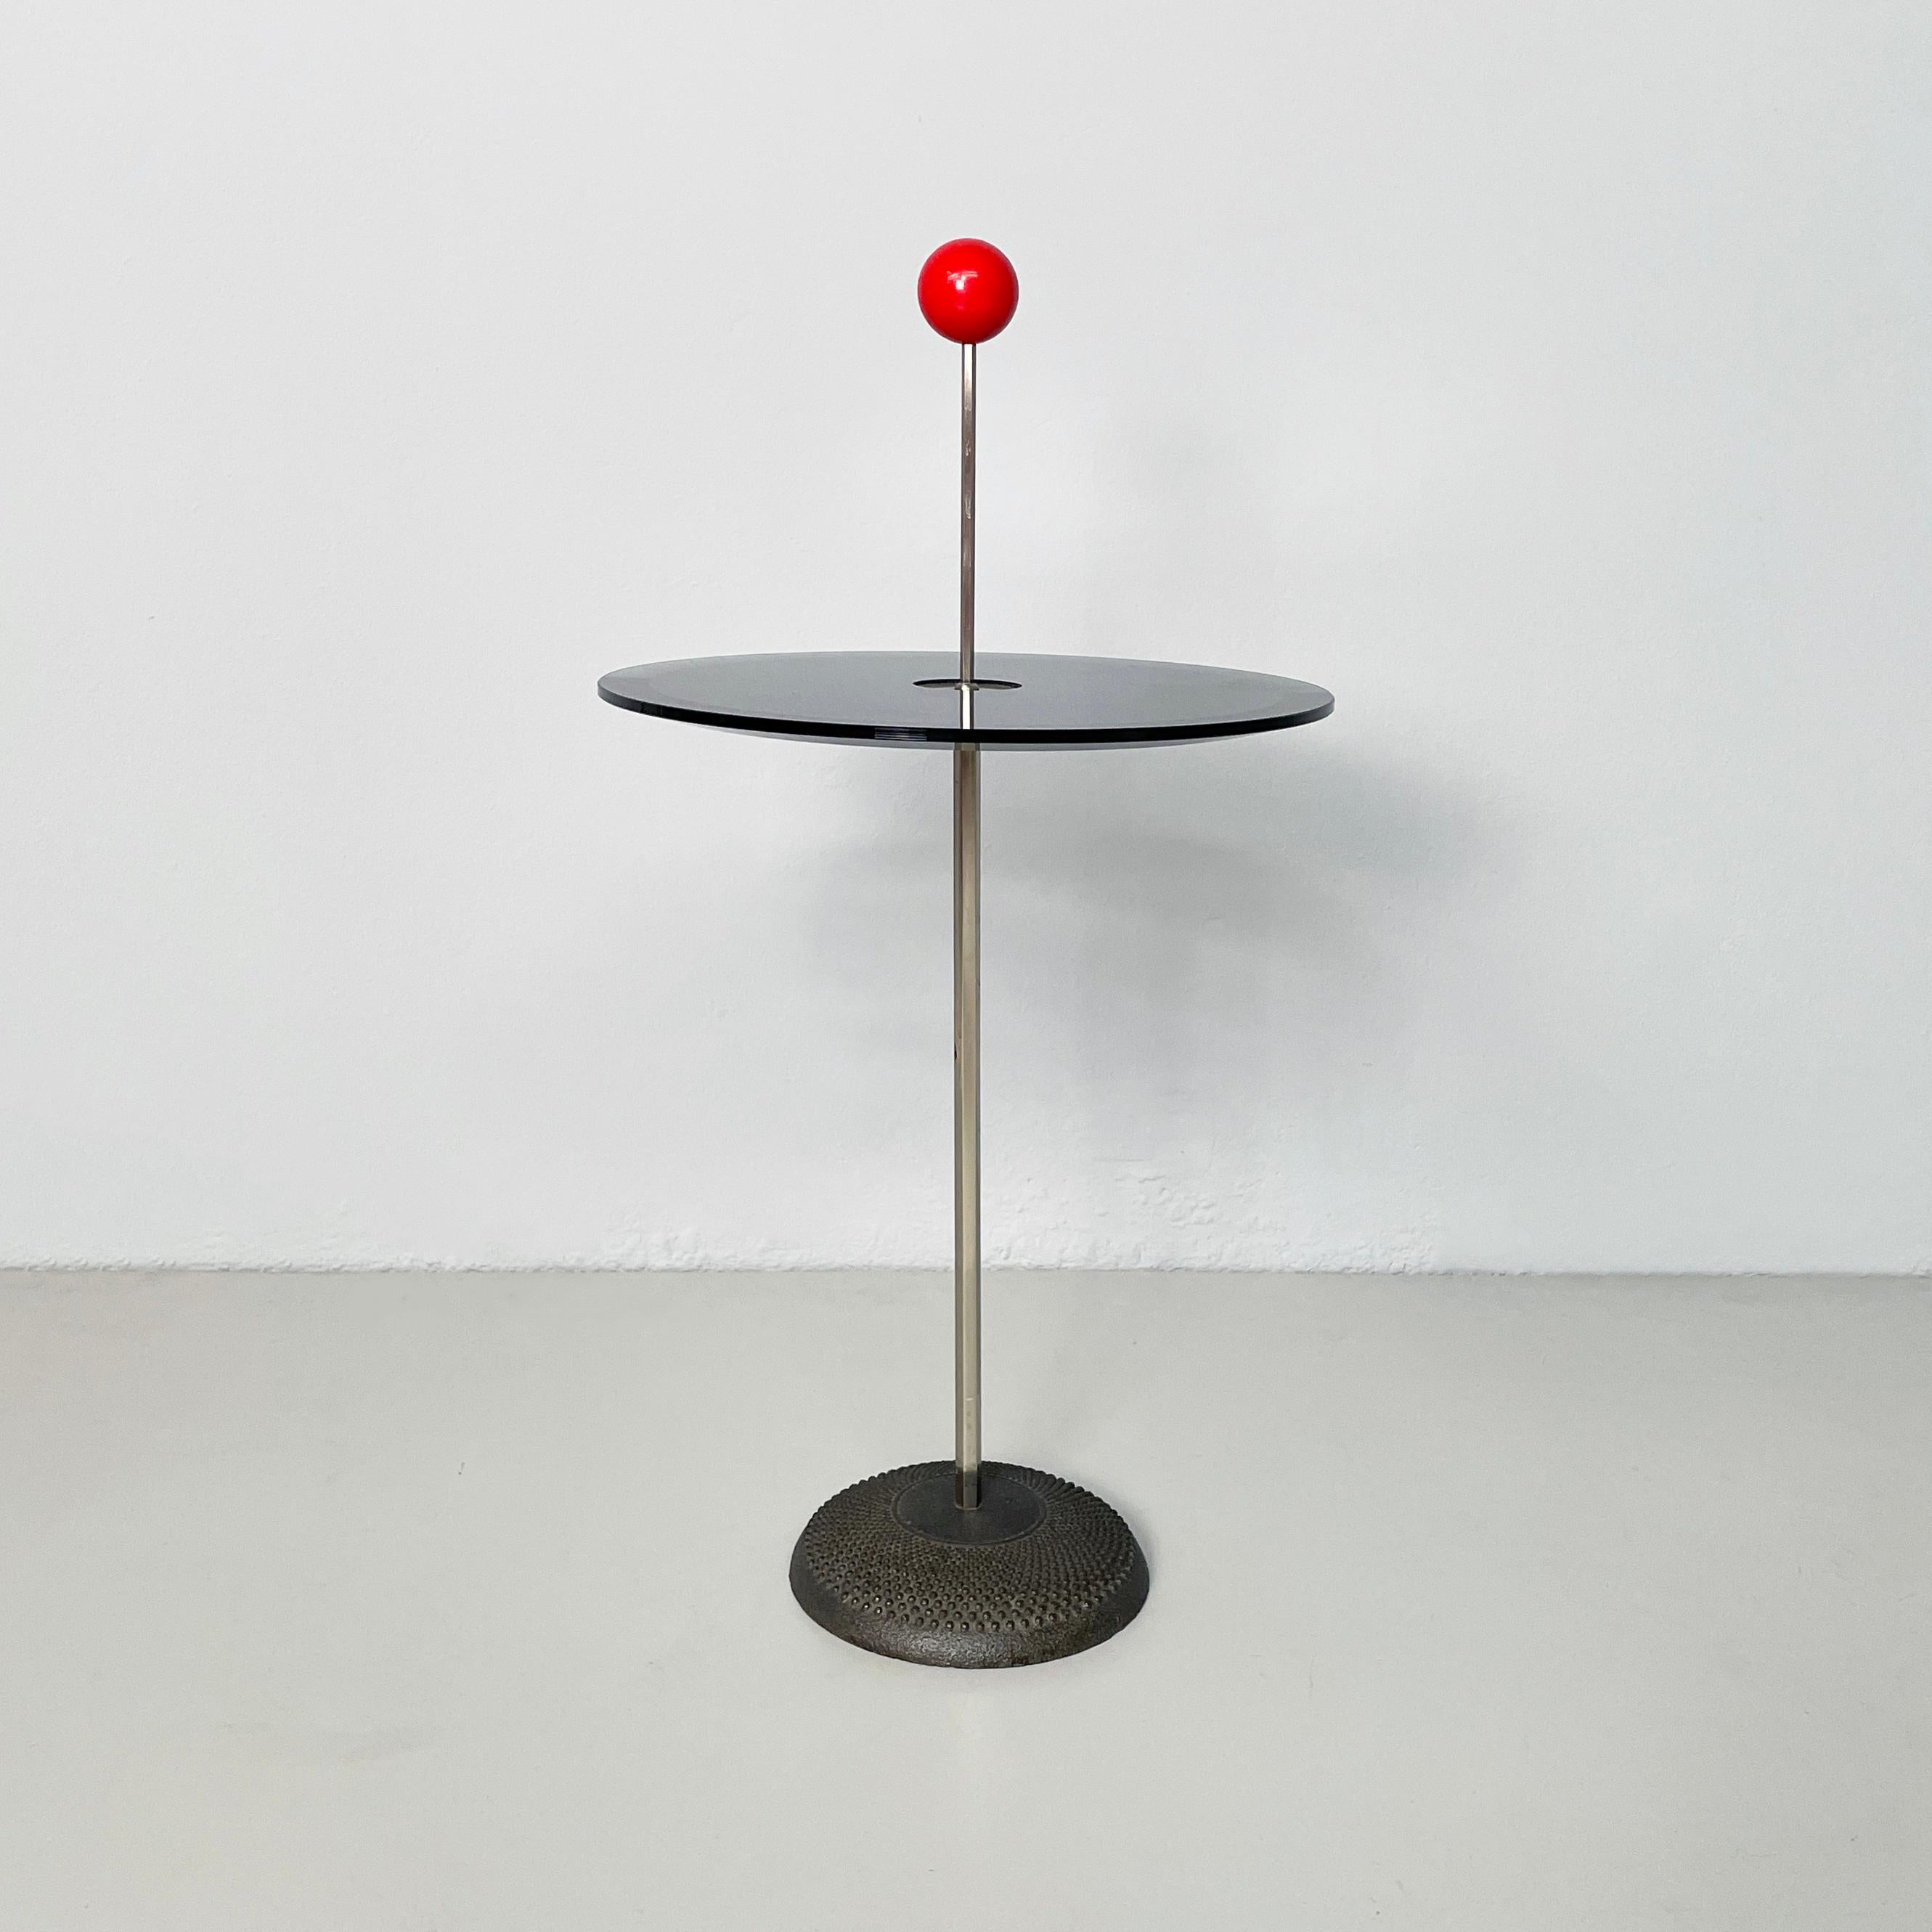 Table basse moderne italienne Orio par Pierluigi Cerri pour Fontana Arte, années 1980
Table basse mod. Orio avec plateau rond en verre fumé avec bord biseauté. La structure métallique est dotée d'une poignée sphérique en résine rouge. La base ronde